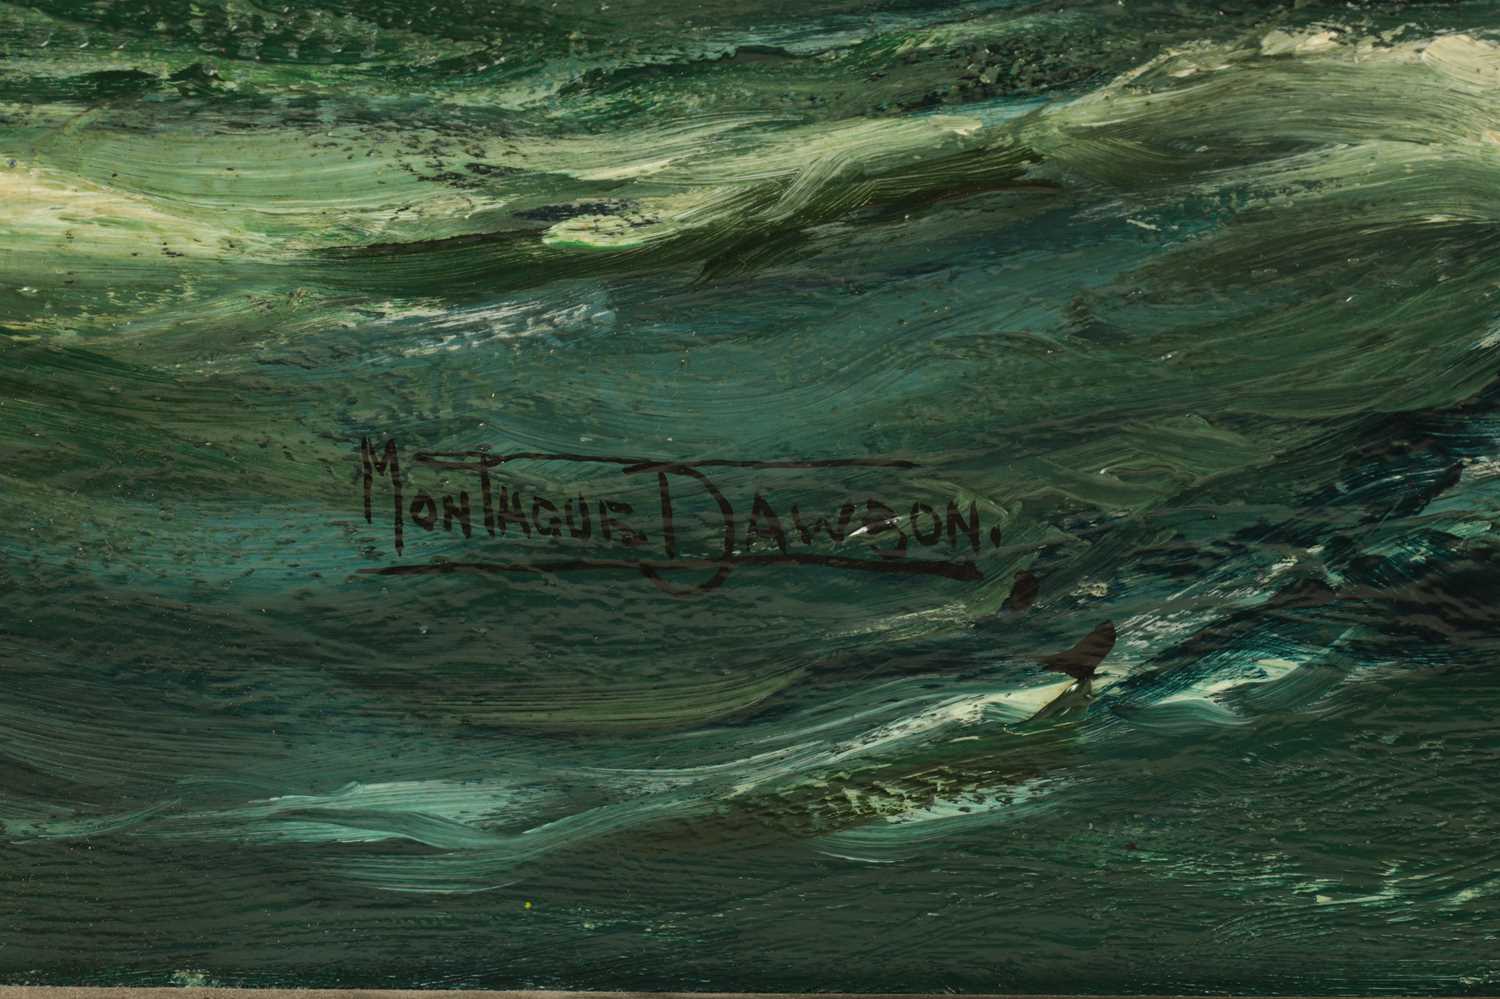 MONTAGUE DAWSON (1895–1973) OIL ON CANVAS 'OCEAN BOUND' - Image 5 of 10